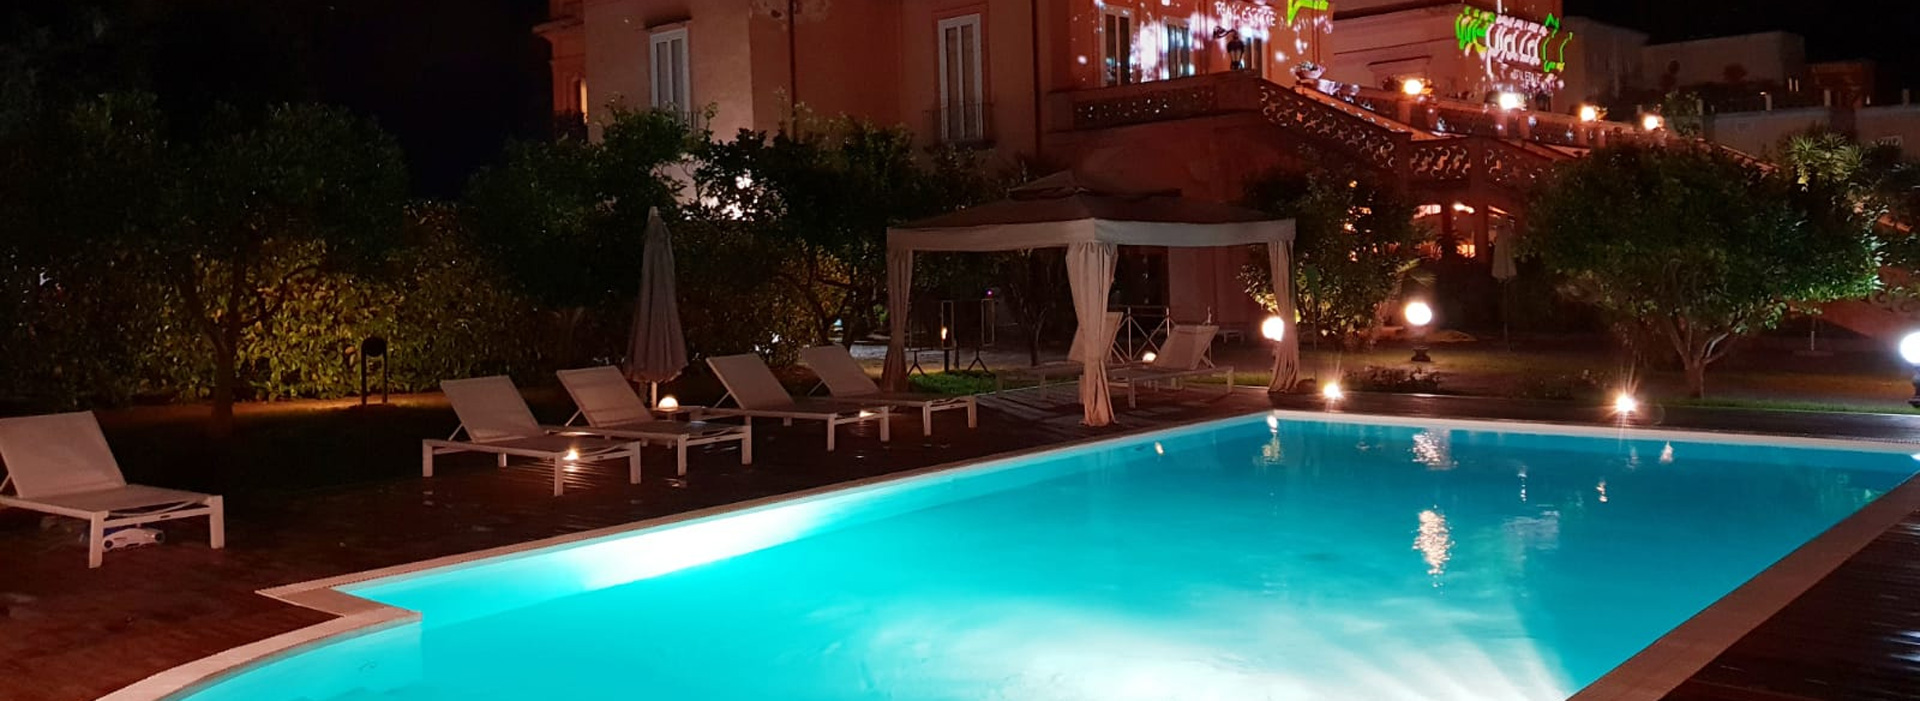 villasignorini_hotel_a_ercolano_foto_piscina_esterna_di_notte